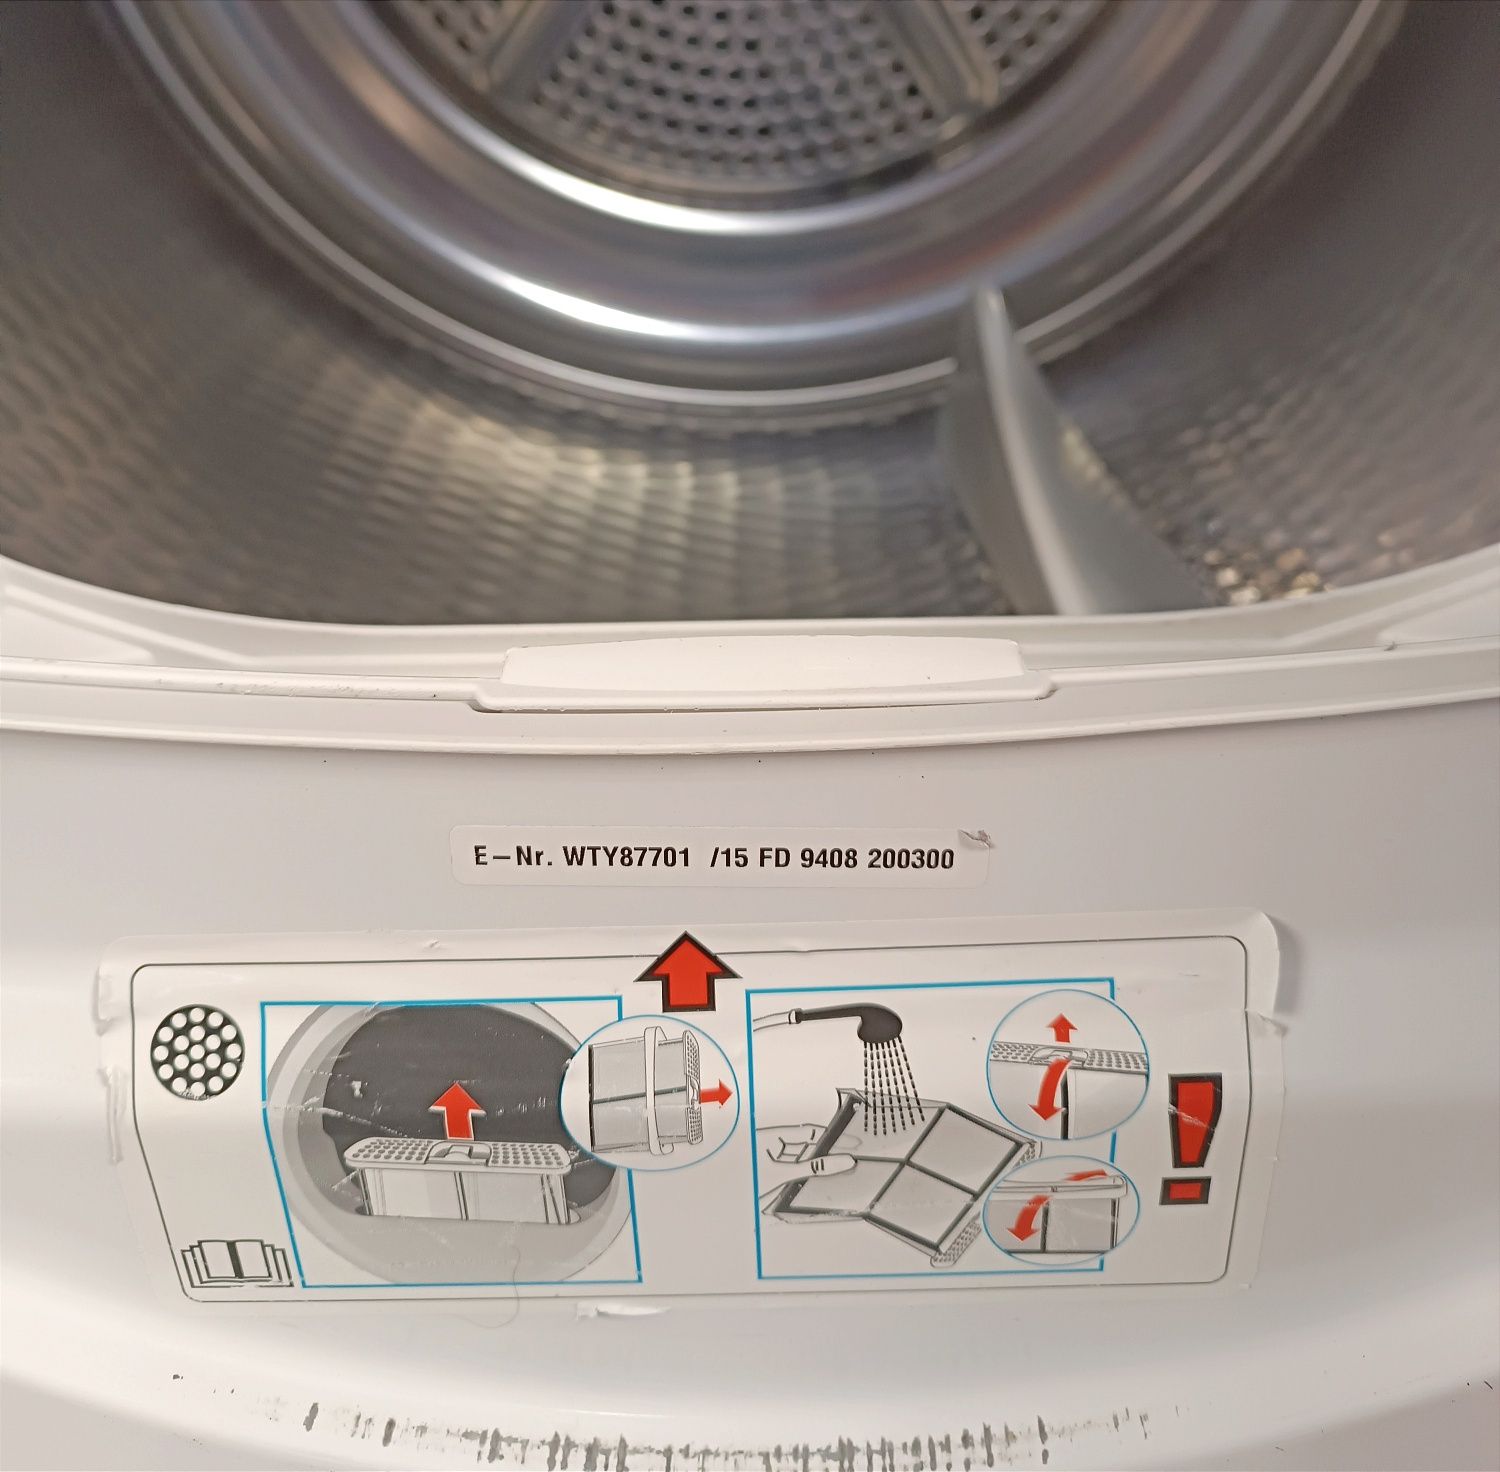 Сушильна машина/сушка для белья,одягу Bosch 7кг конденсаційна гарантія